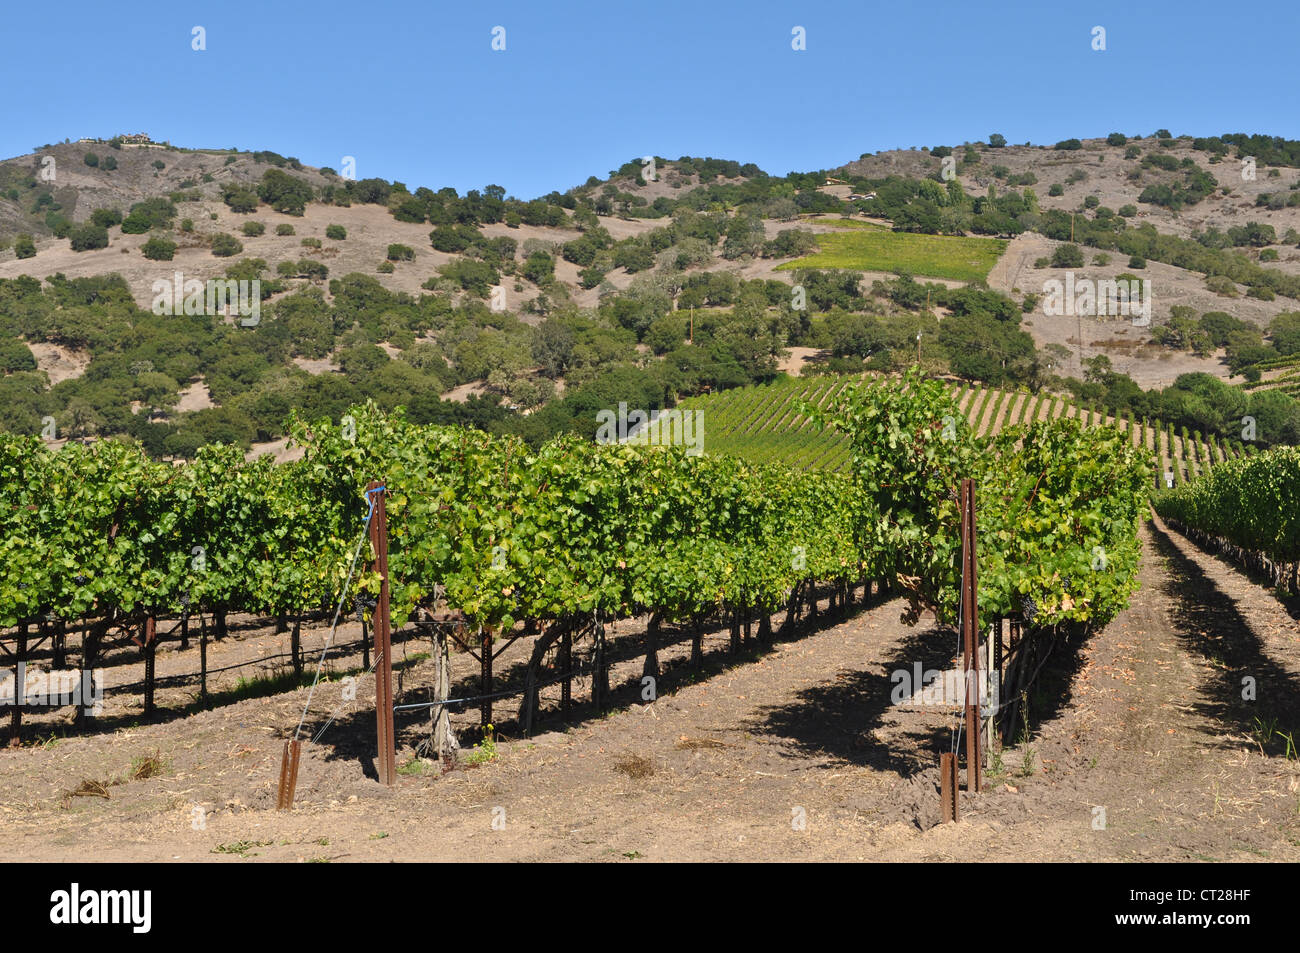 Napa Valley Winery in California Stock Photo